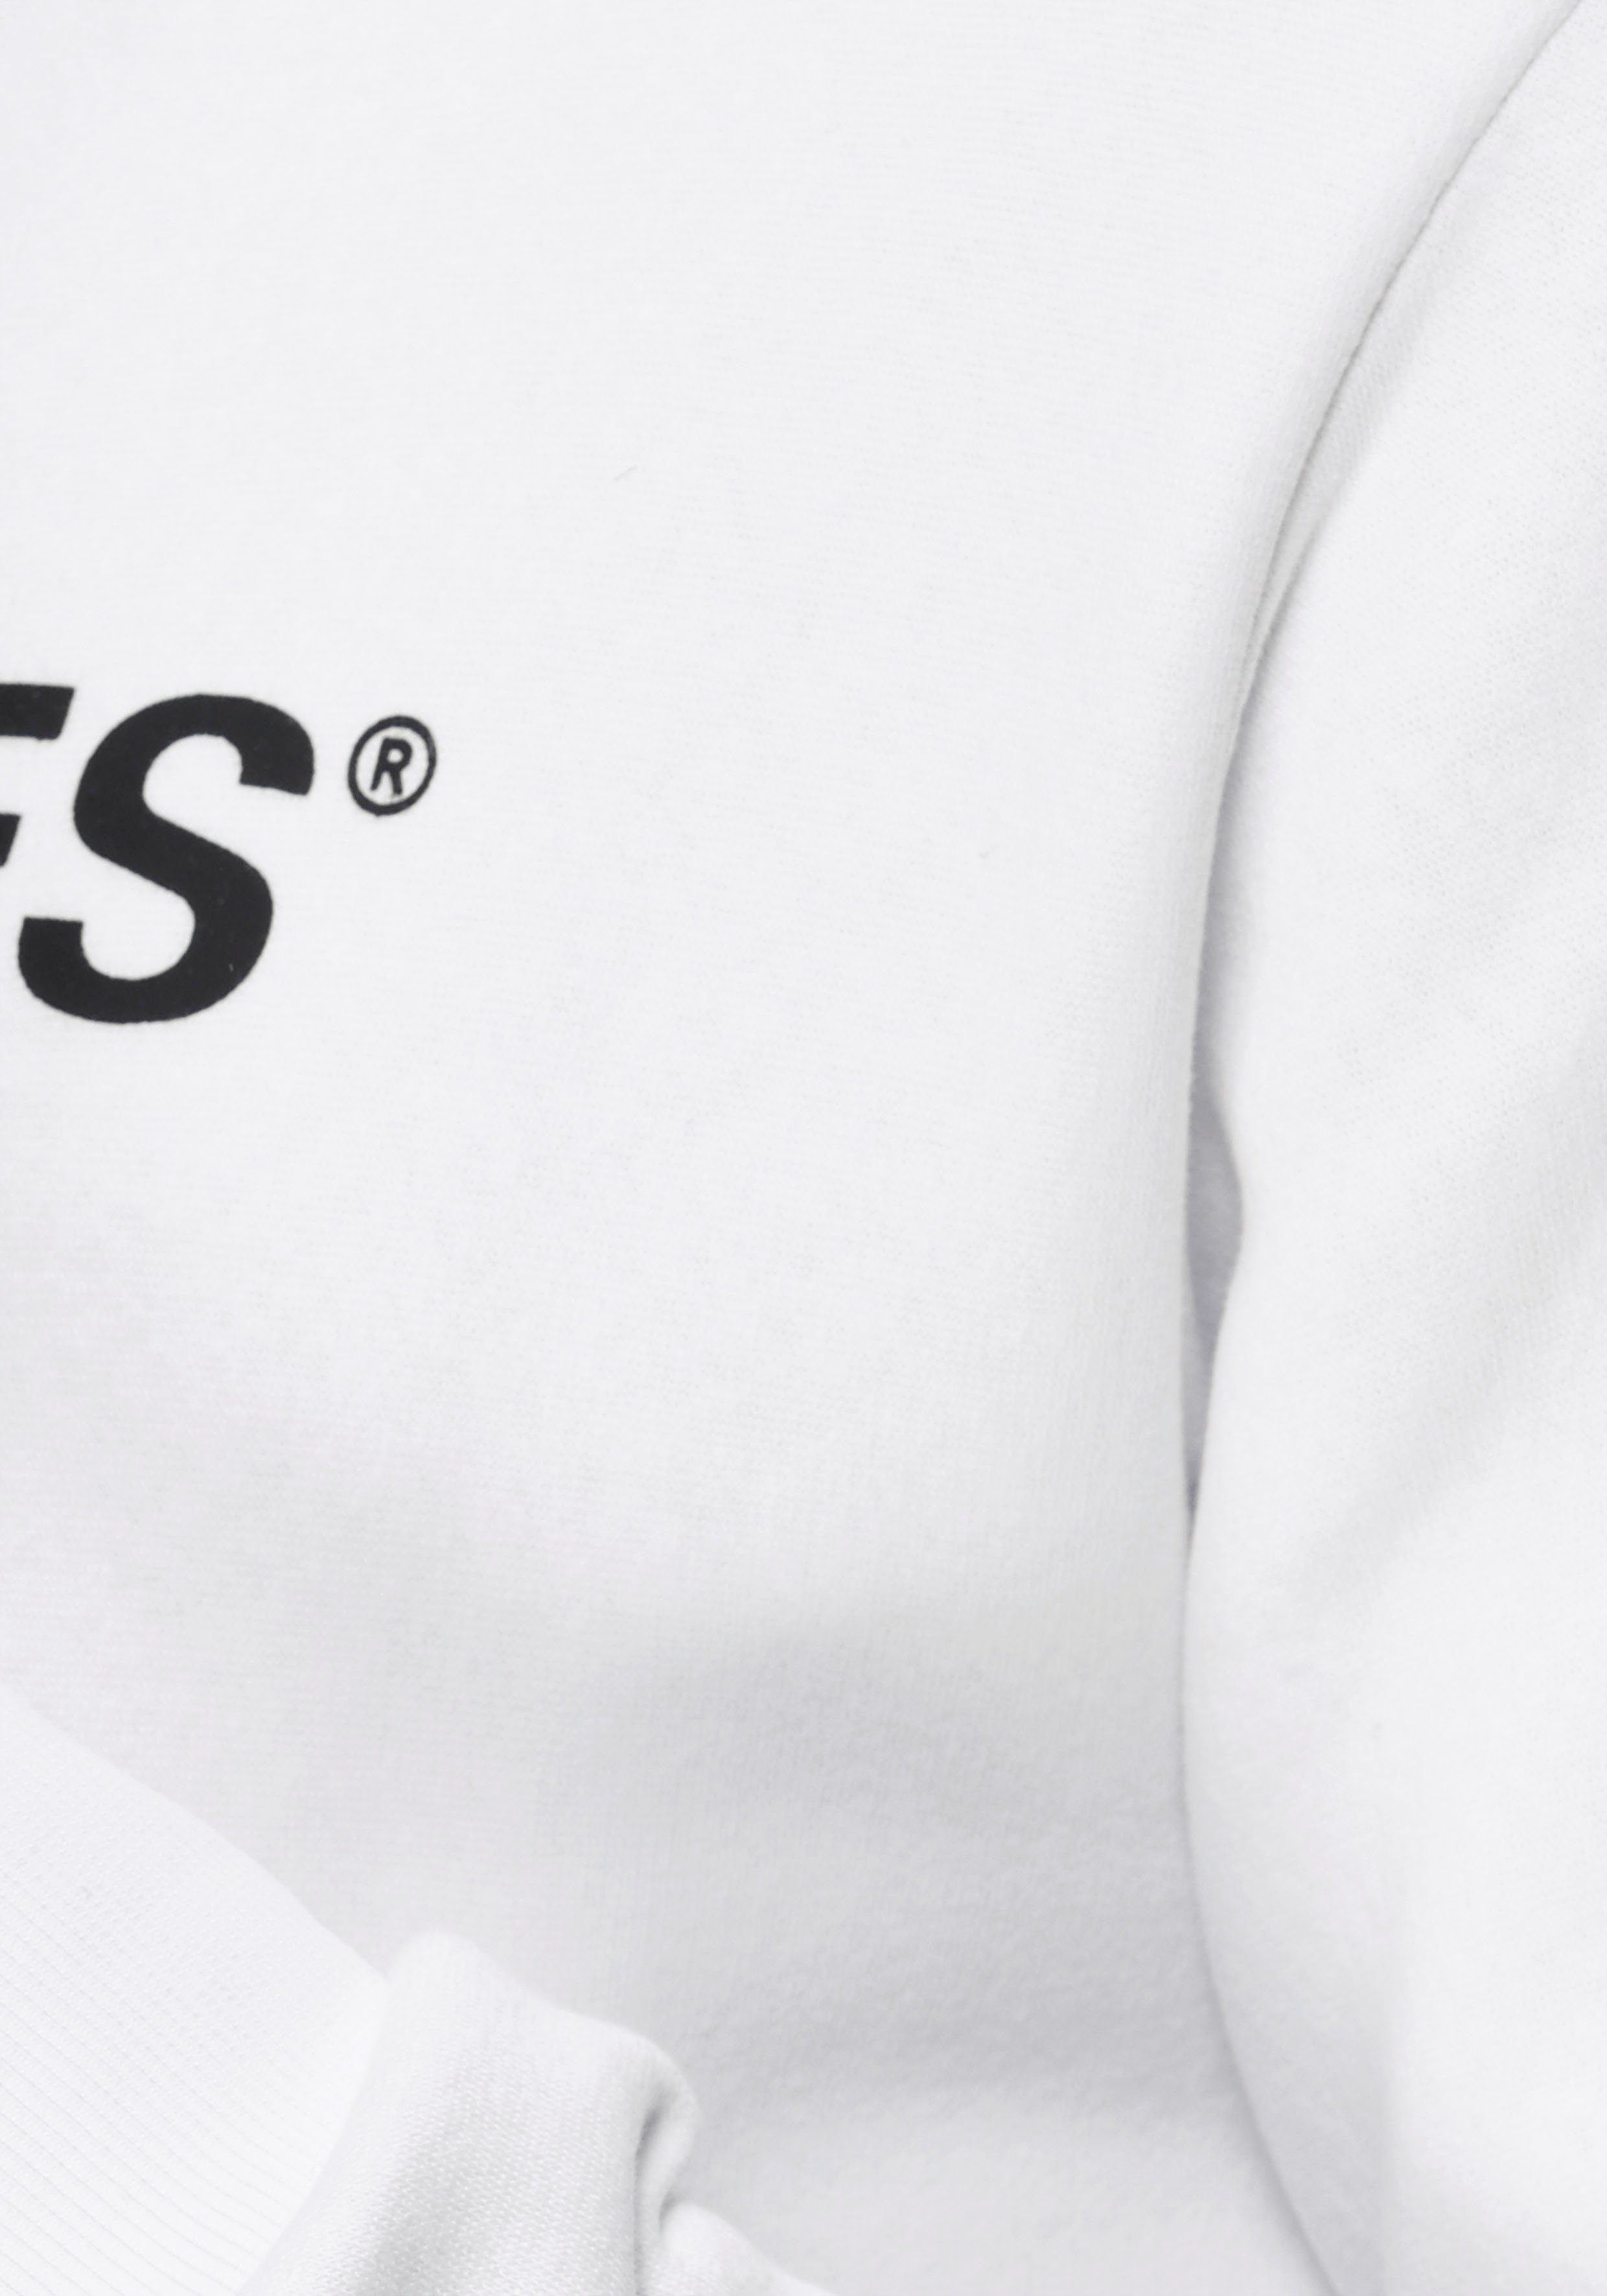 Jack & Kapuzensweatshirt Jones Logo weiß-bedruckt Oldschool Hoodie